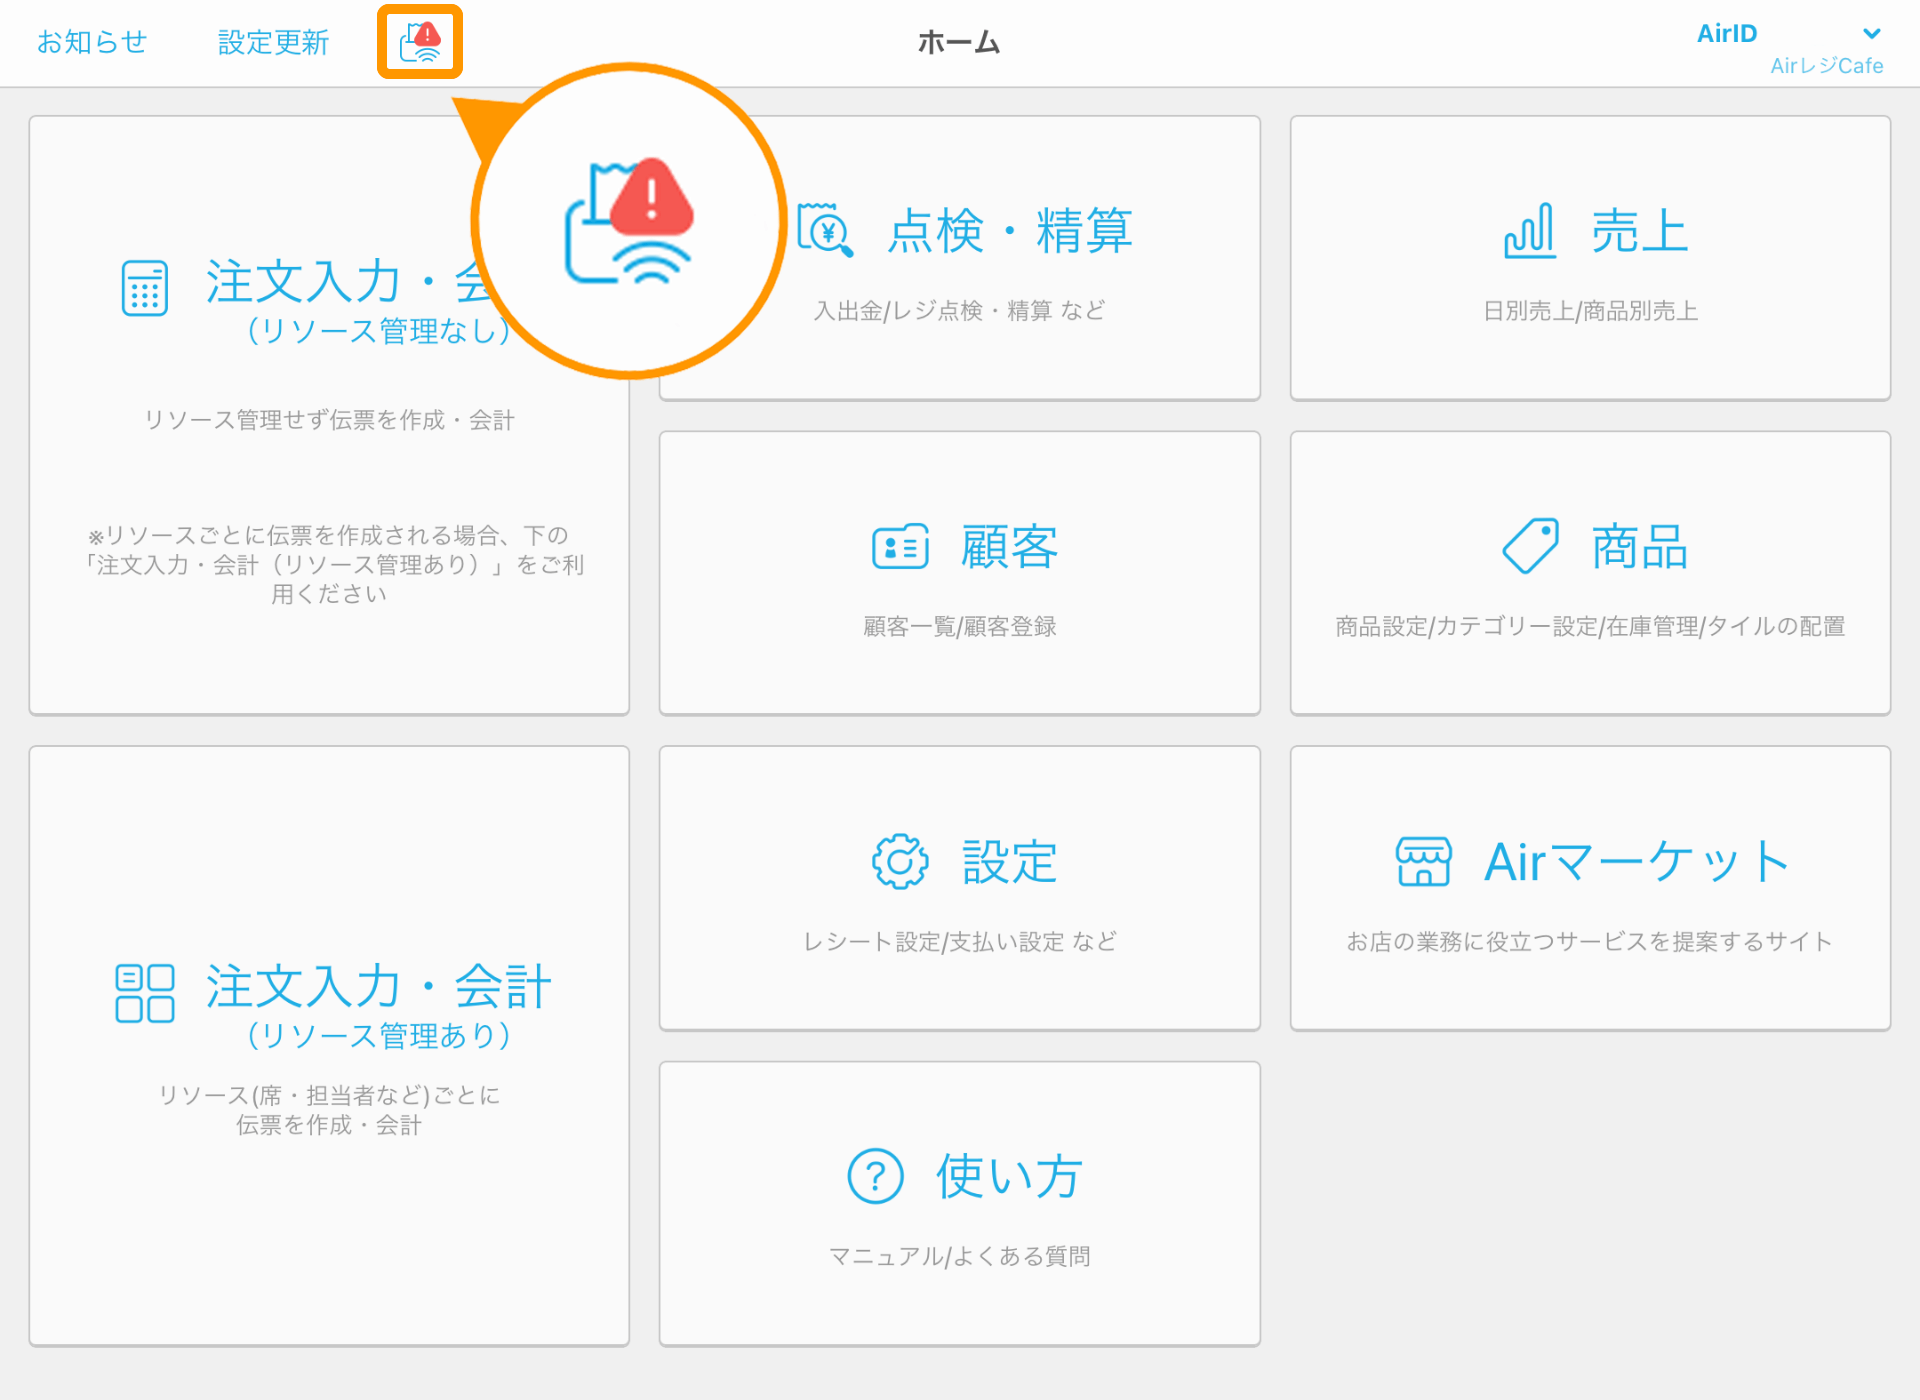 01 Airレジ ホーム画面 接続状況アイコン